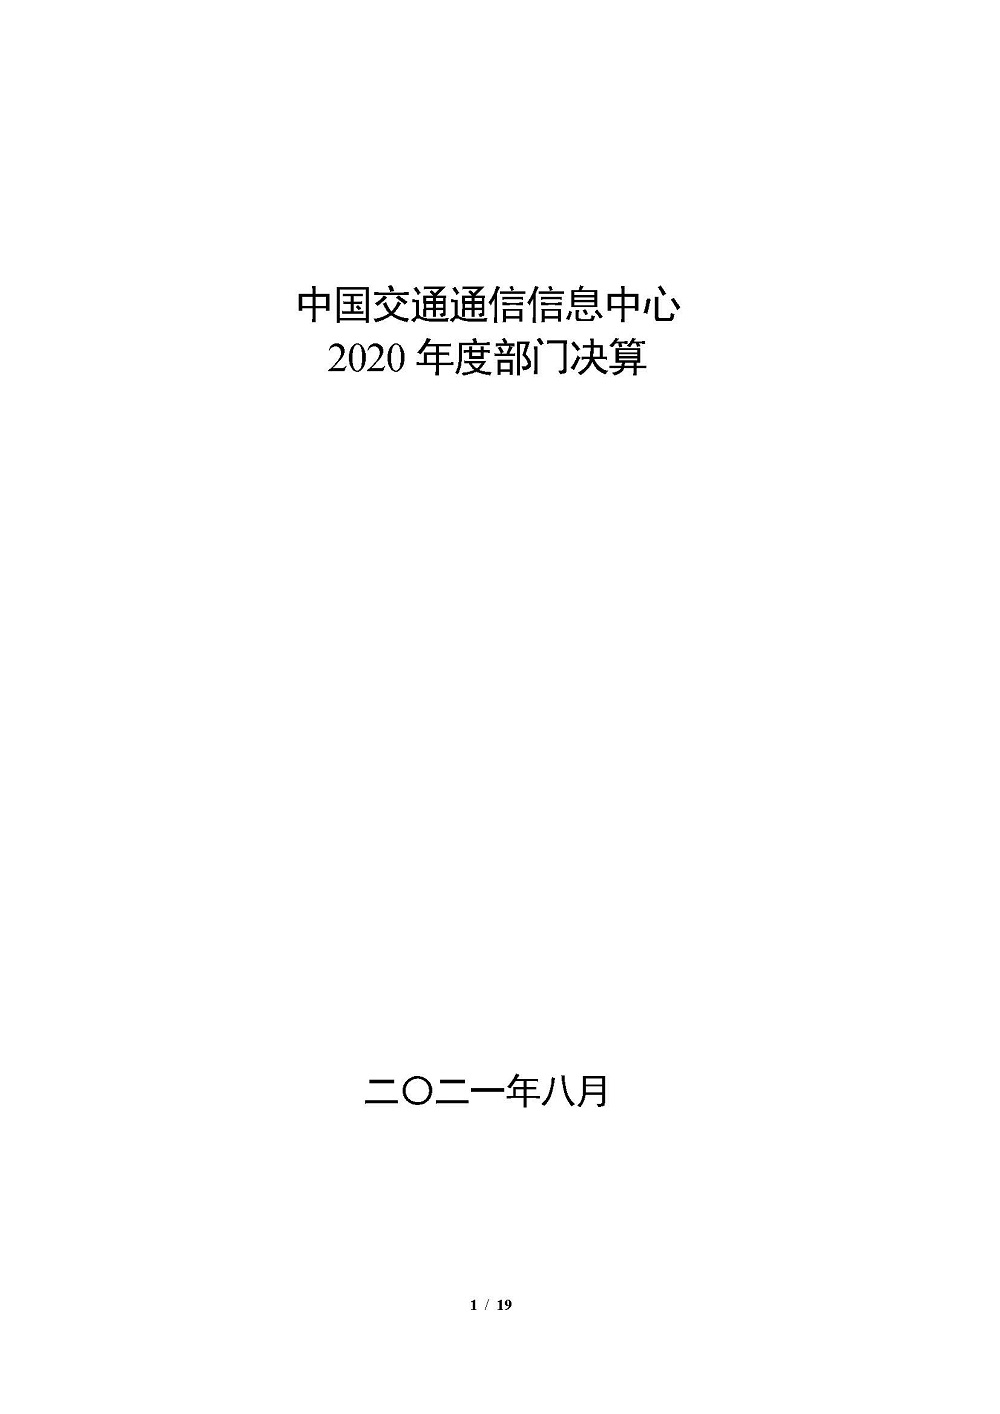 2020年部门决算公开情况说明(报出版）0818_页面_01.jpg